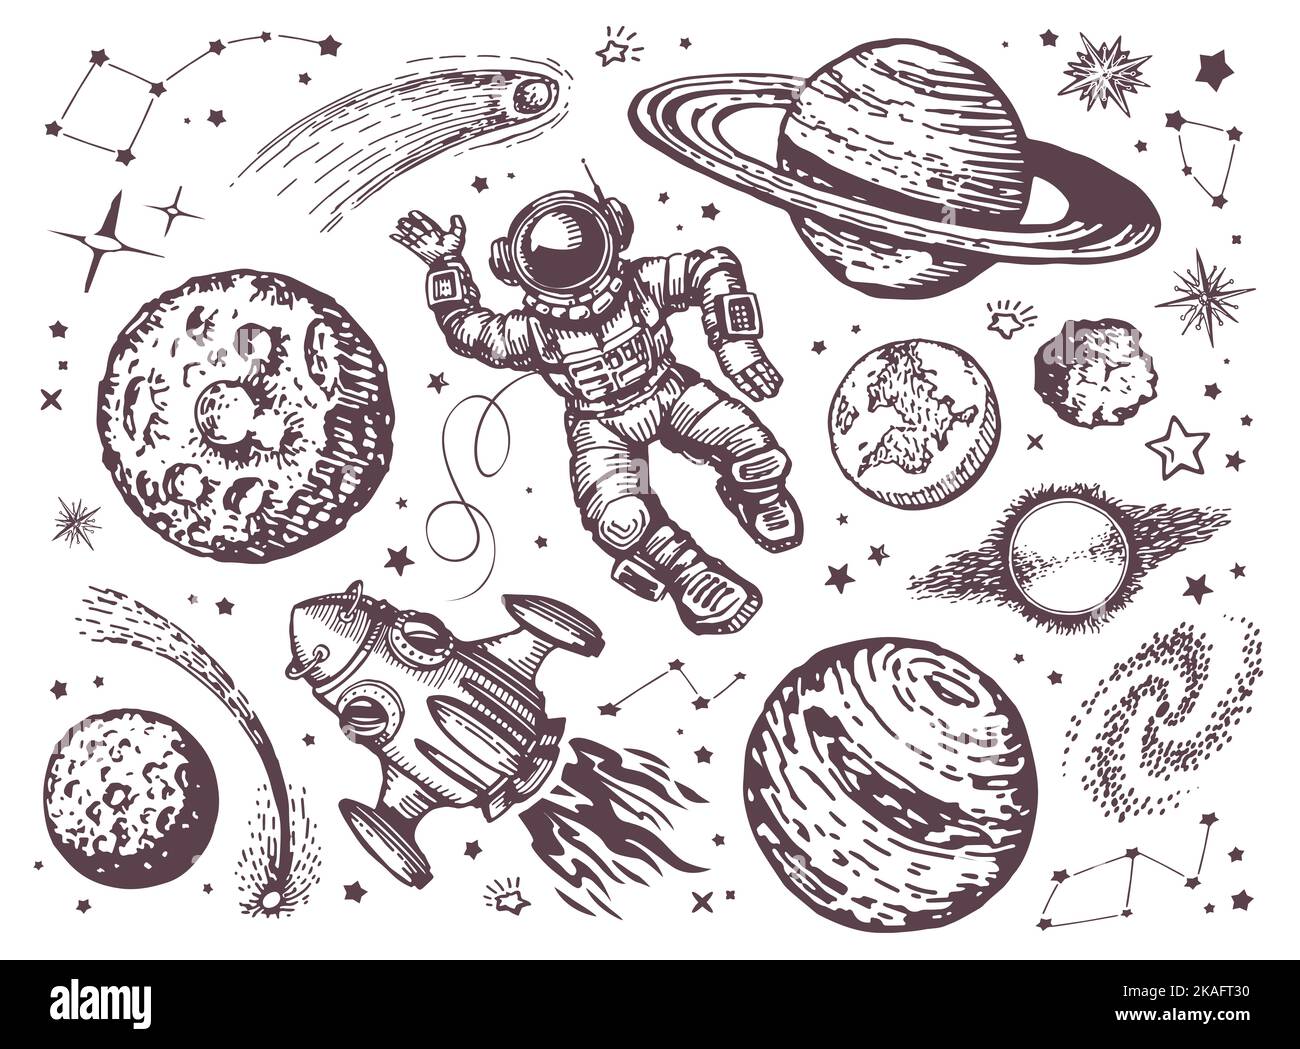 Raum mit Planeten, Kometen, Sternbildern, Sternen, Raumschiff und Astronaut. Astronomie, Nachthimmel Konzept Skizze vintage Stockfoto